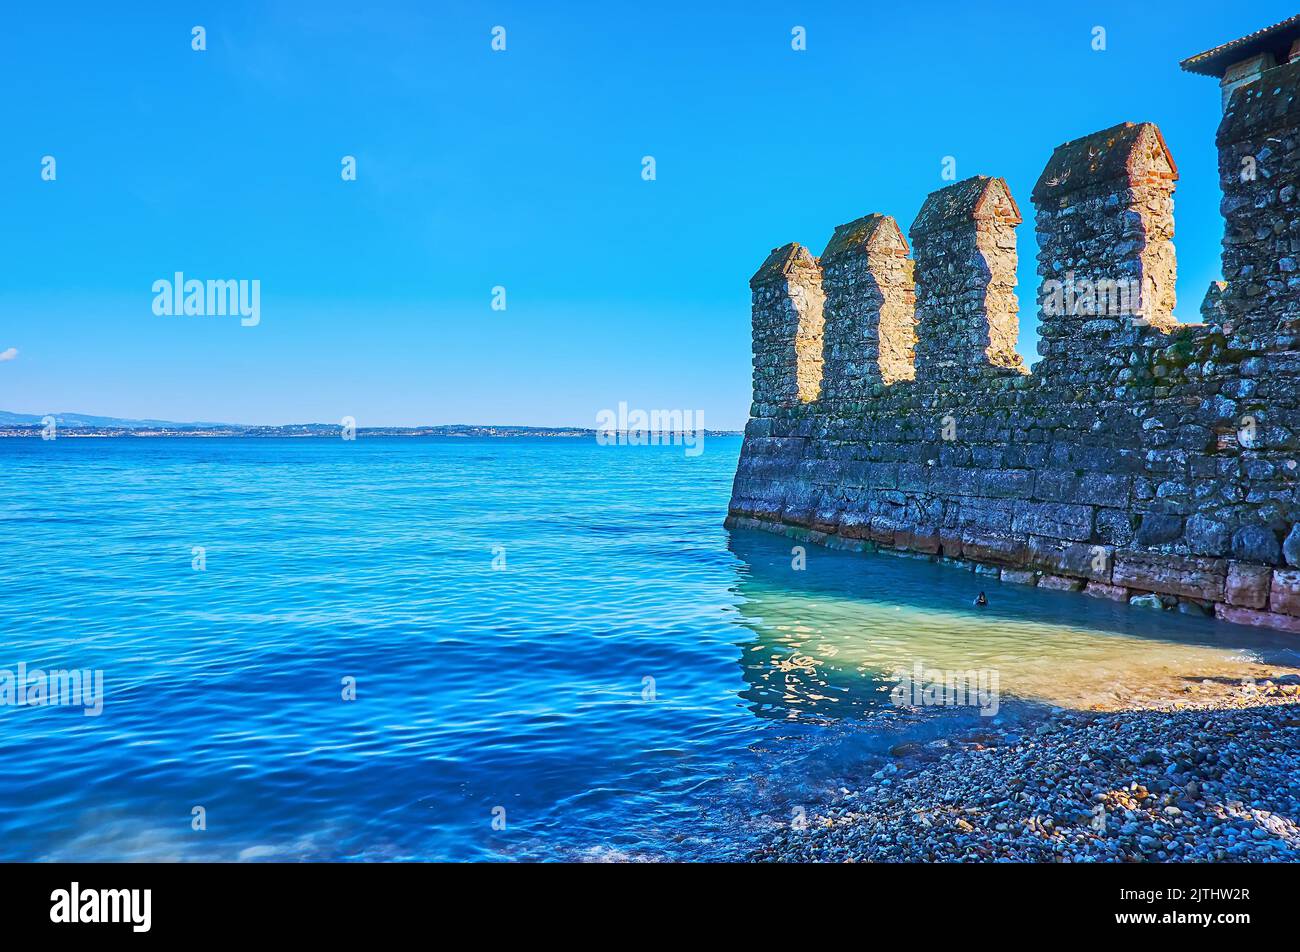 L'azzurro del lago di Garda con le mura medievali conservate del Castello Scaligero, Sirmione, Italia Foto Stock